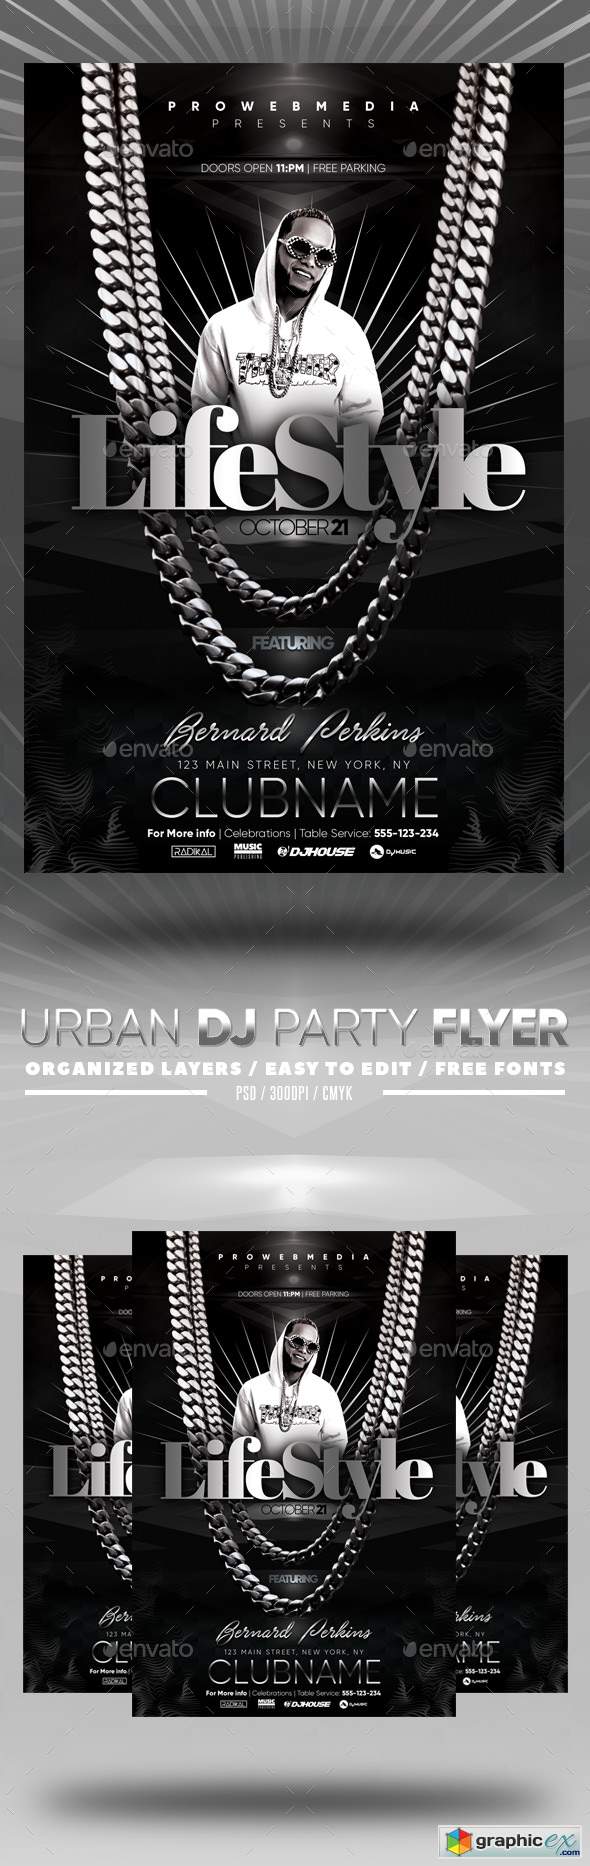 Urban DJ Party Flyer 